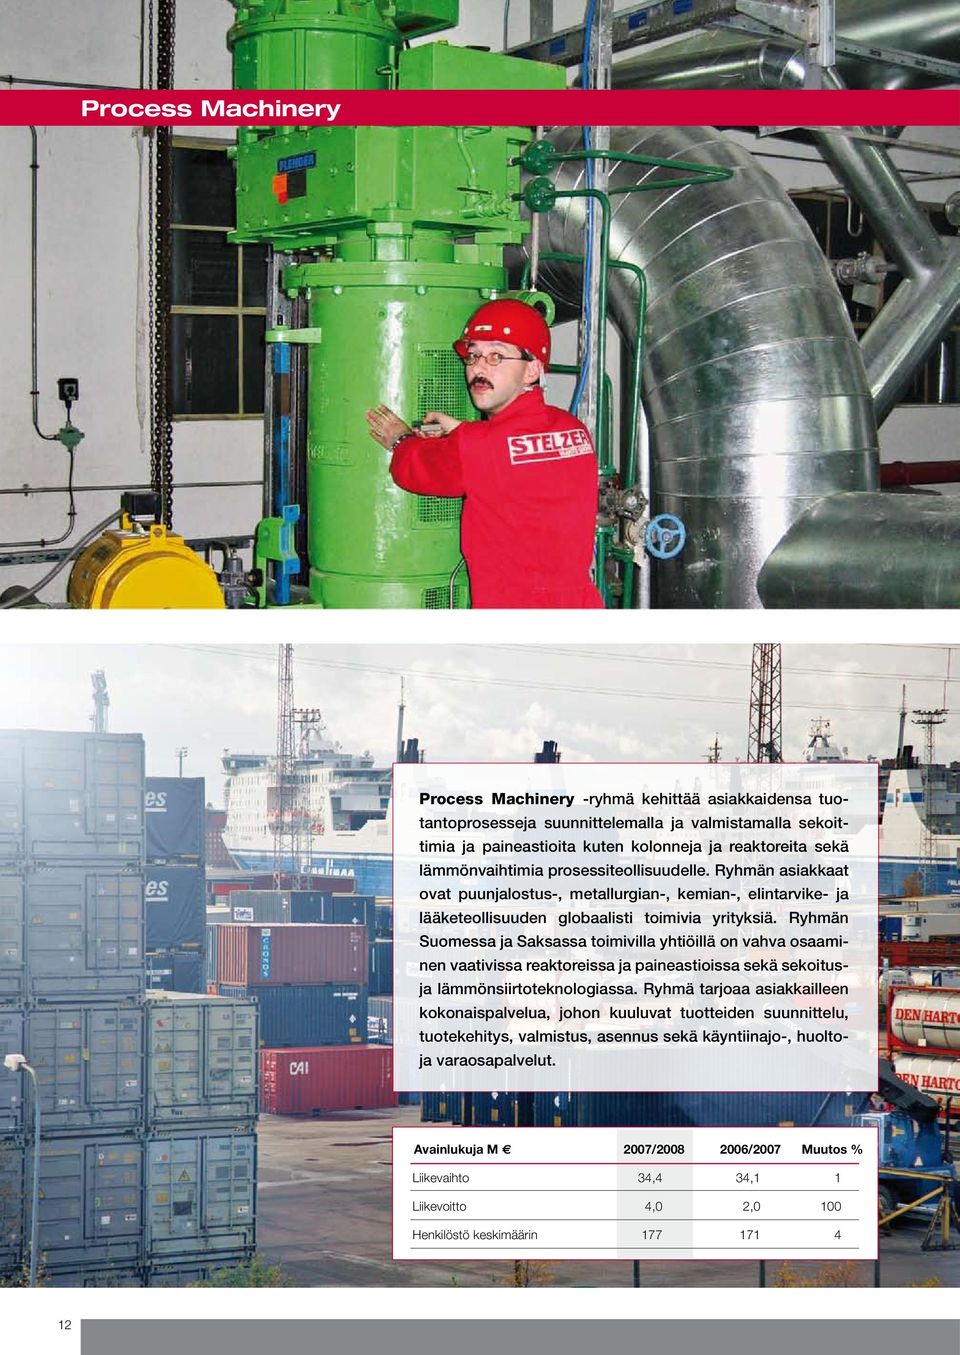 Ryhmän Suomessa ja Saksassa toimivilla yhtiöillä on vahva osaaminen vaativissa reaktoreissa ja paineastioissa sekä sekoitusja lämmönsiirtoteknologiassa.